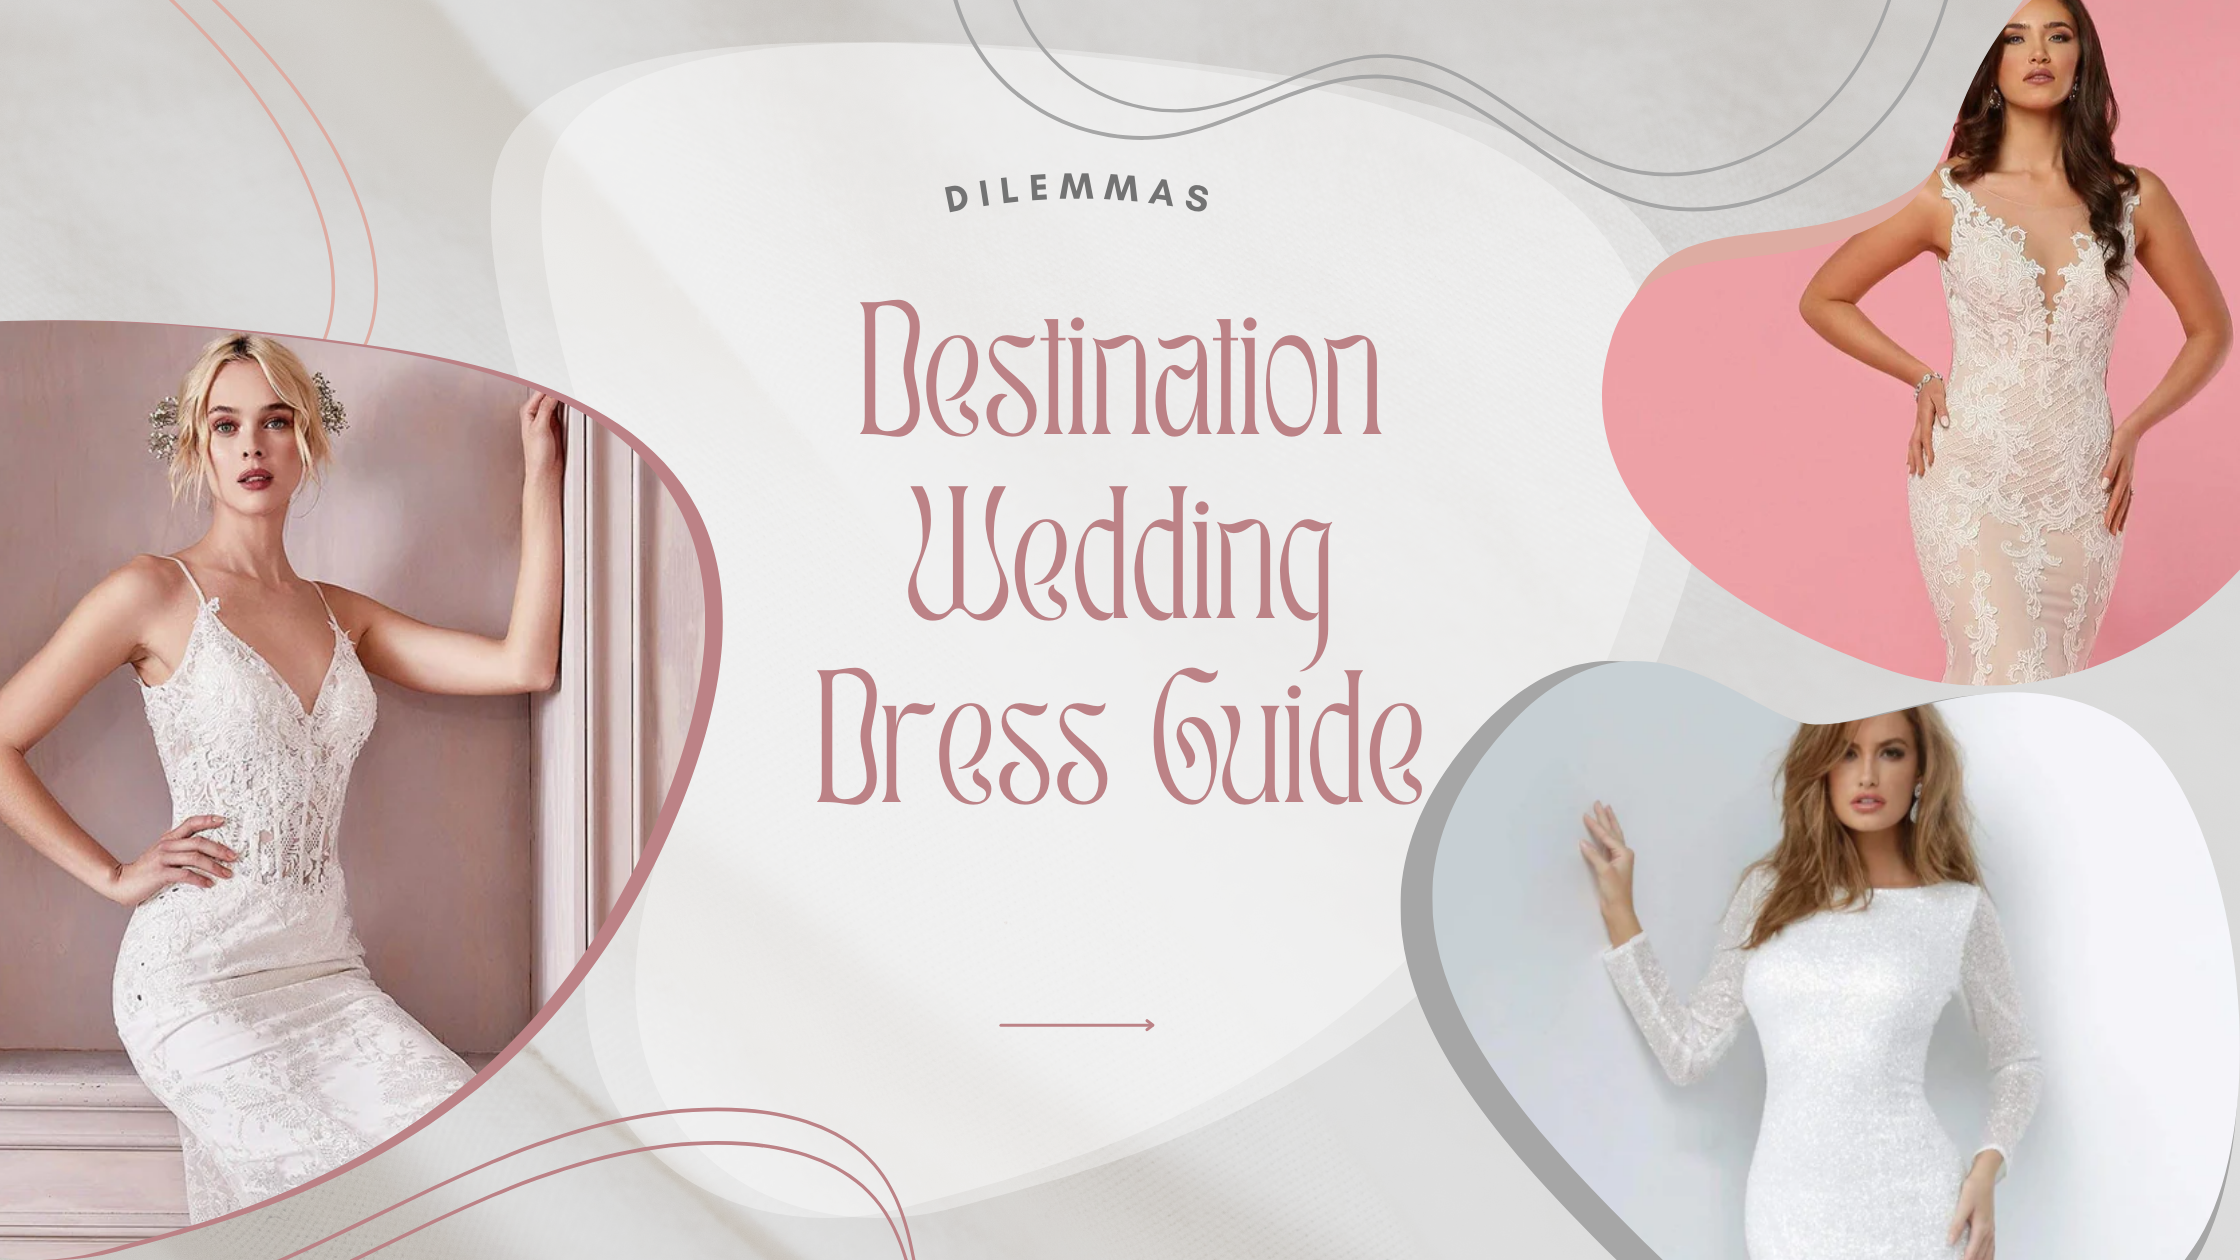 Dilemmas: Destination Wedding Dress Guide